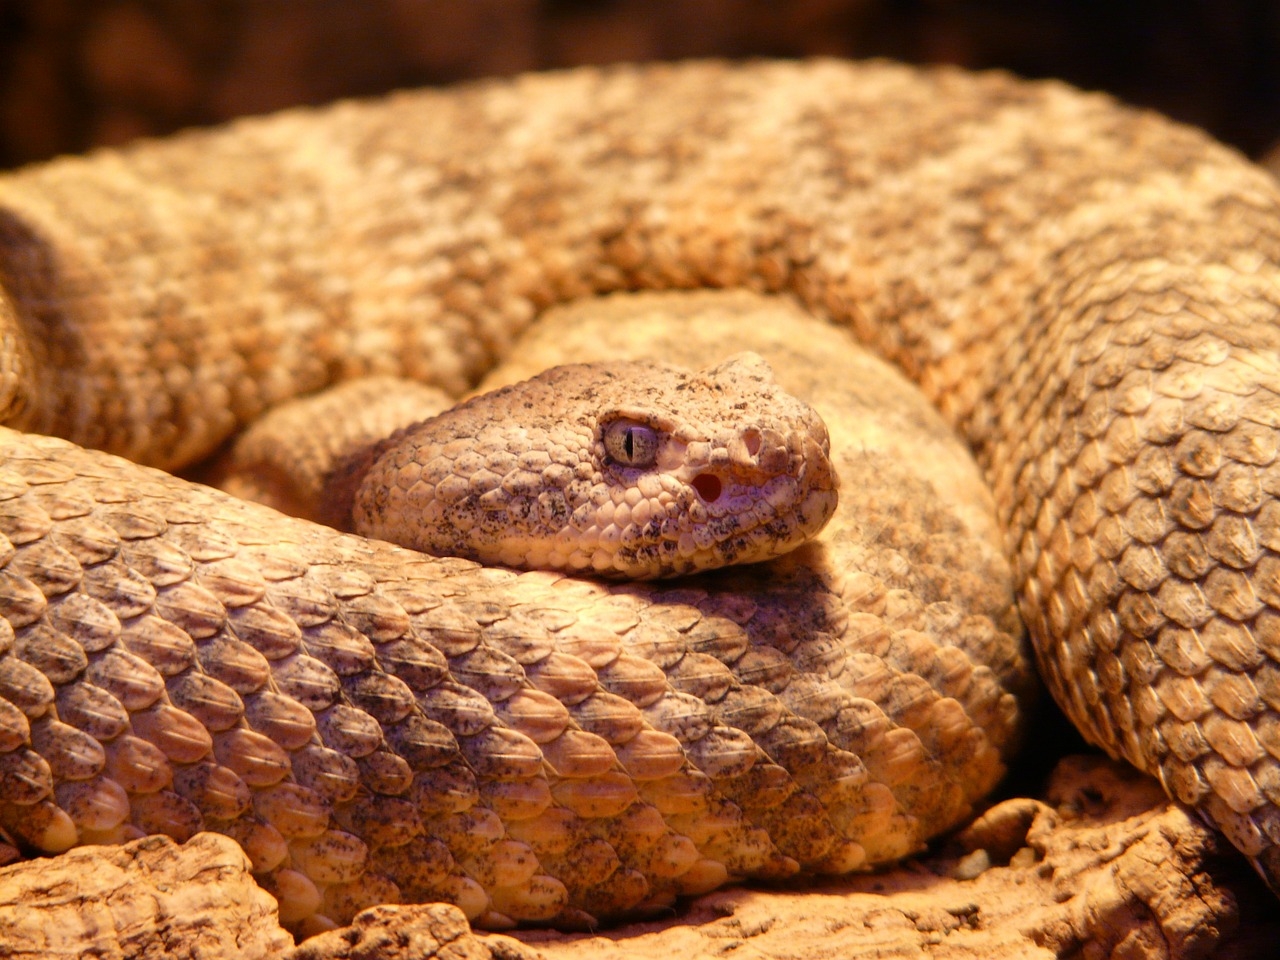 spotted-rattlesnake-54003_1280